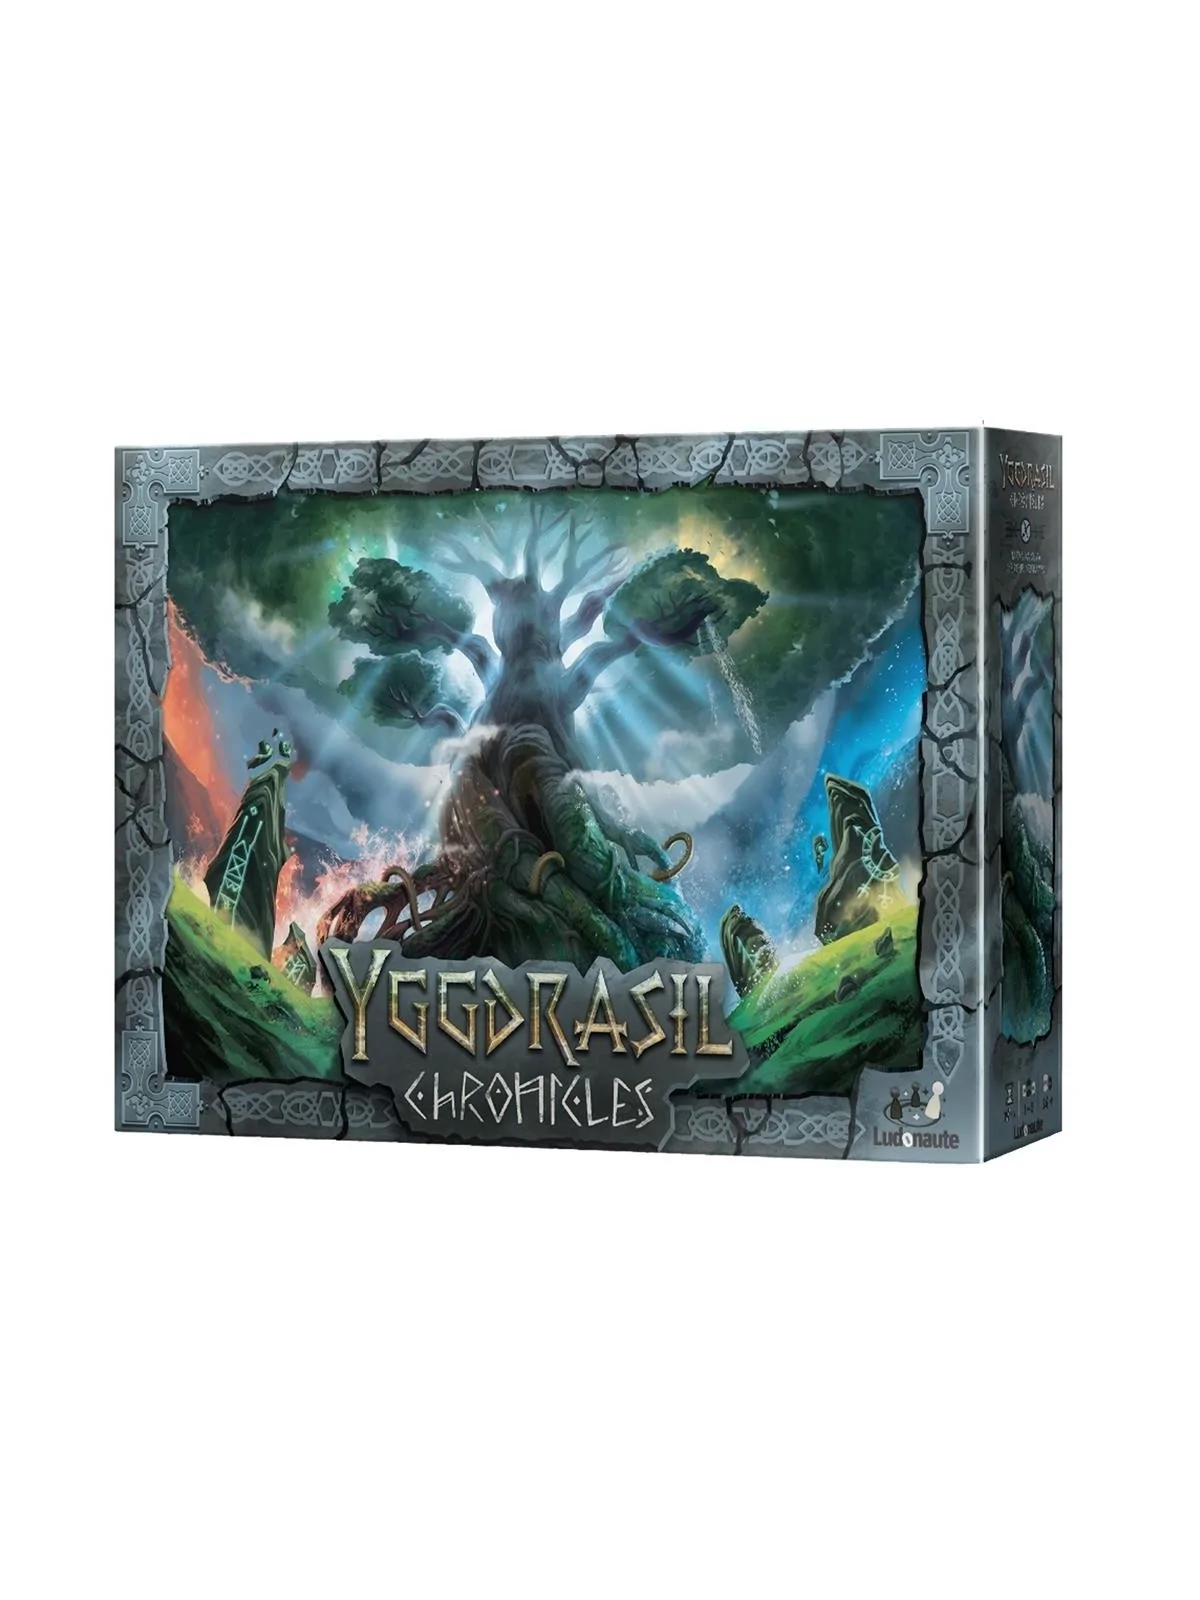 Comprar Yggdrasil Chronicles barato al mejor precio 44,96 € de Ludonau